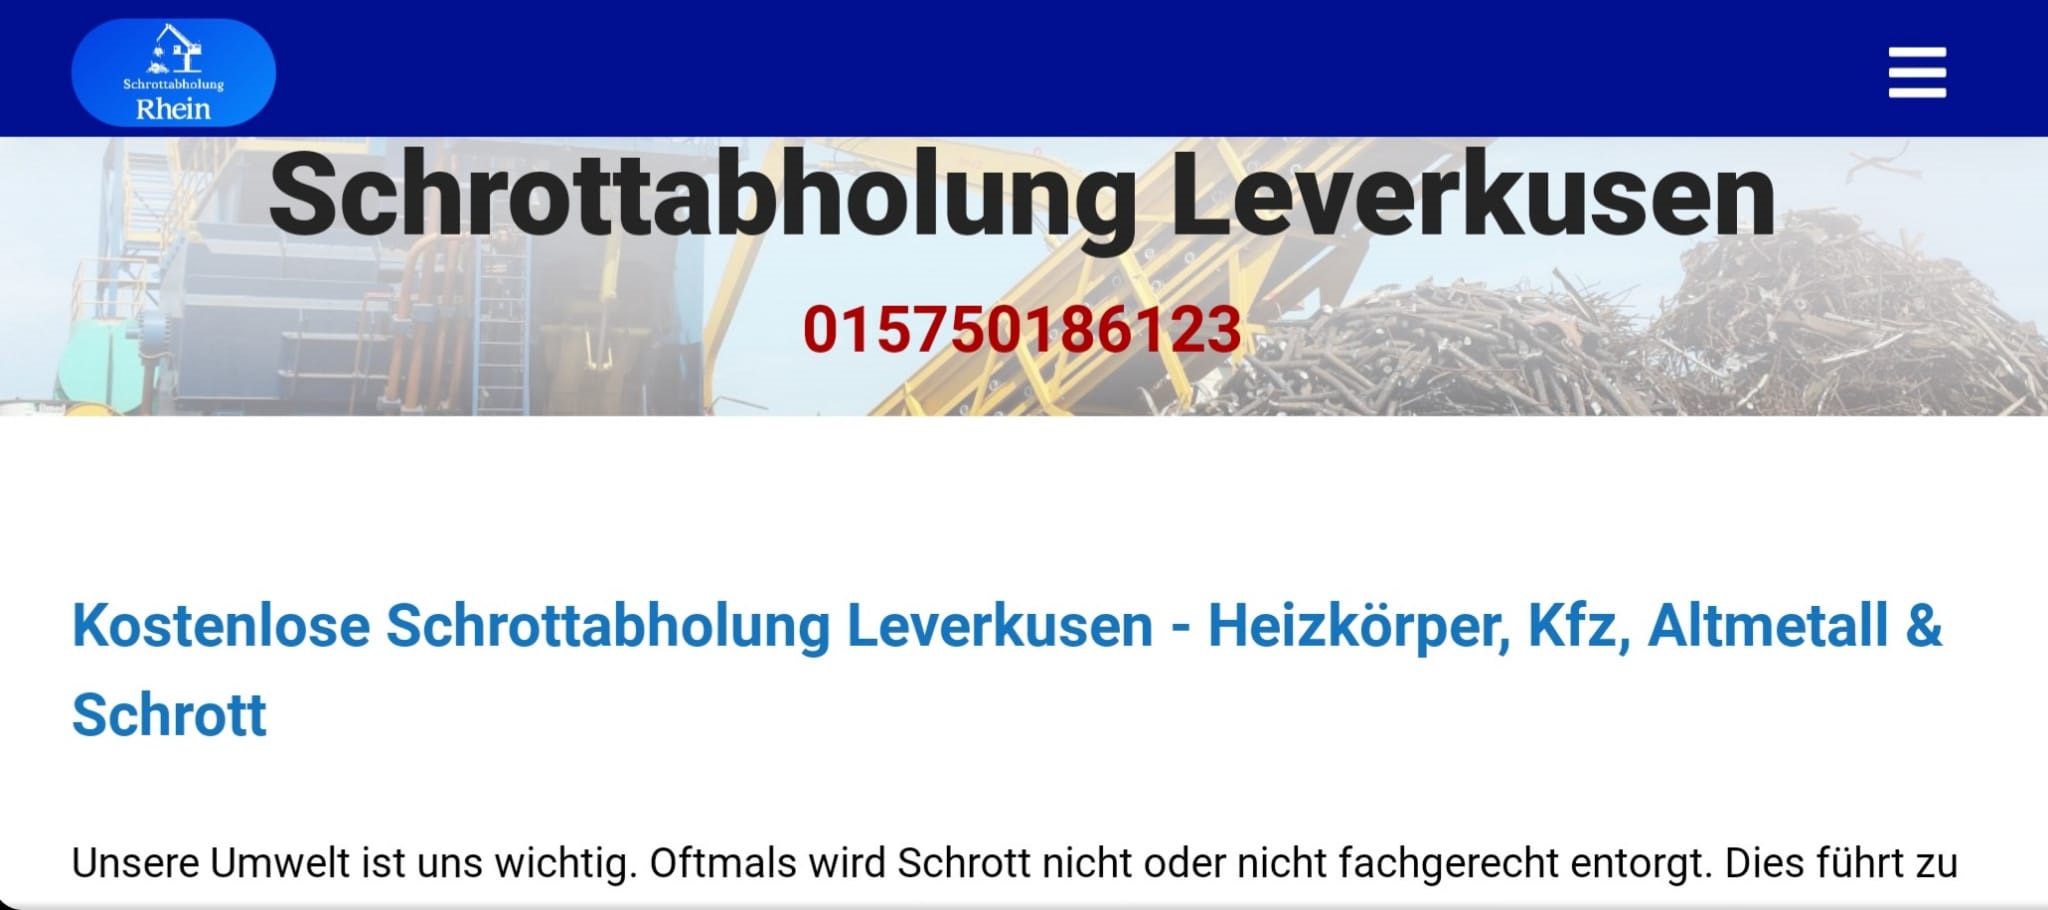 Schrott & Altmetall Kosenlose loswerden in Leverkusen umd Umgebung